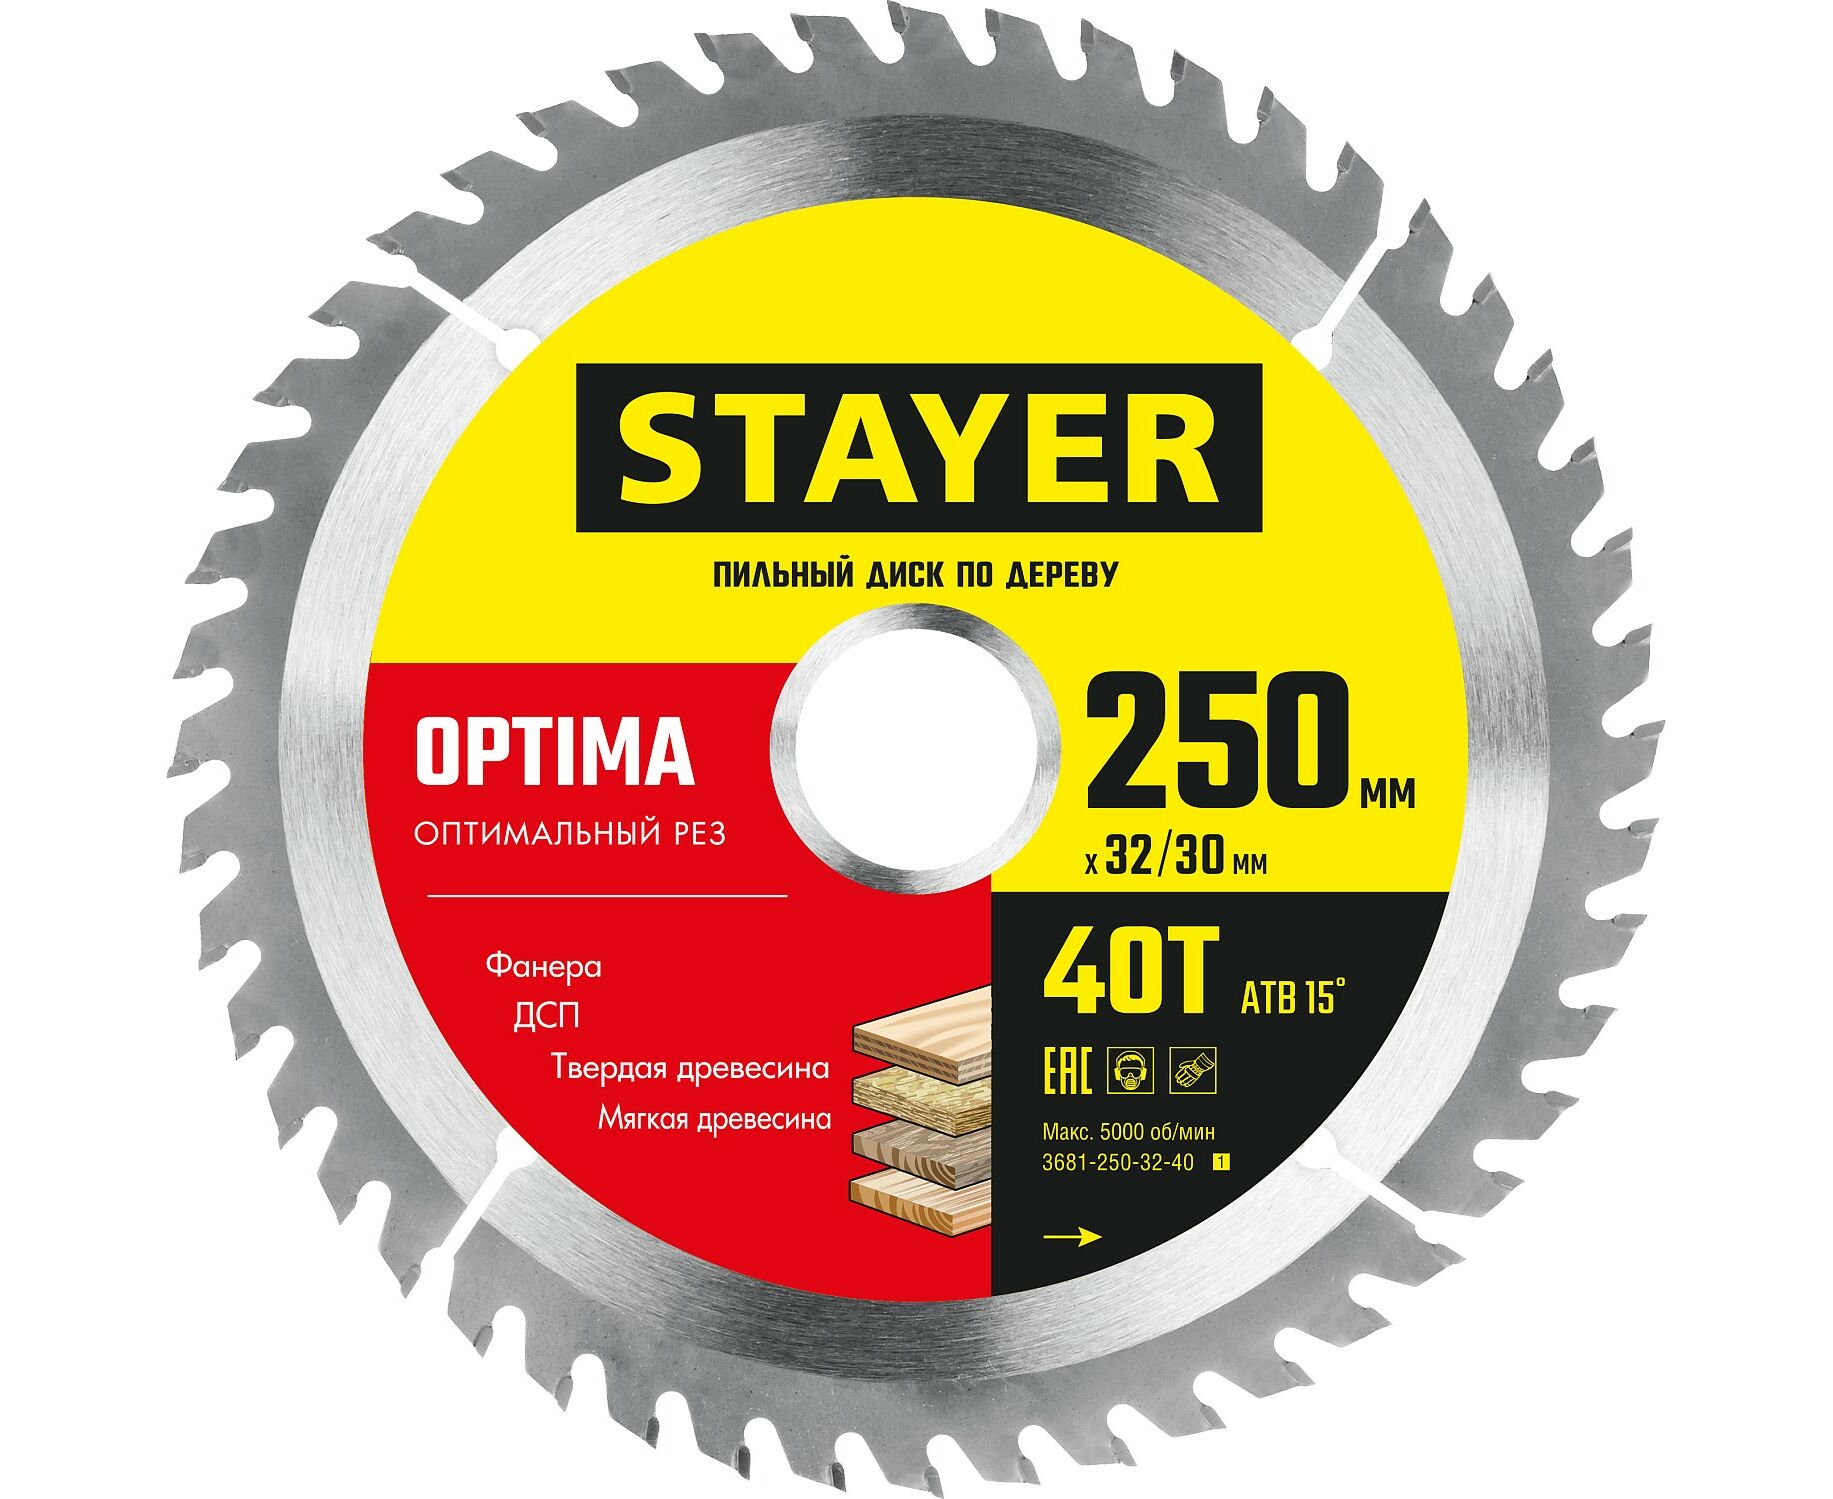 Пильный диск STAYER OPTIMA 250 x 32/30мм 40Т, оптимальный рез по дереву пильный диск stayer optima 216 x 32 30мм 36т по дереву оптимальный рез